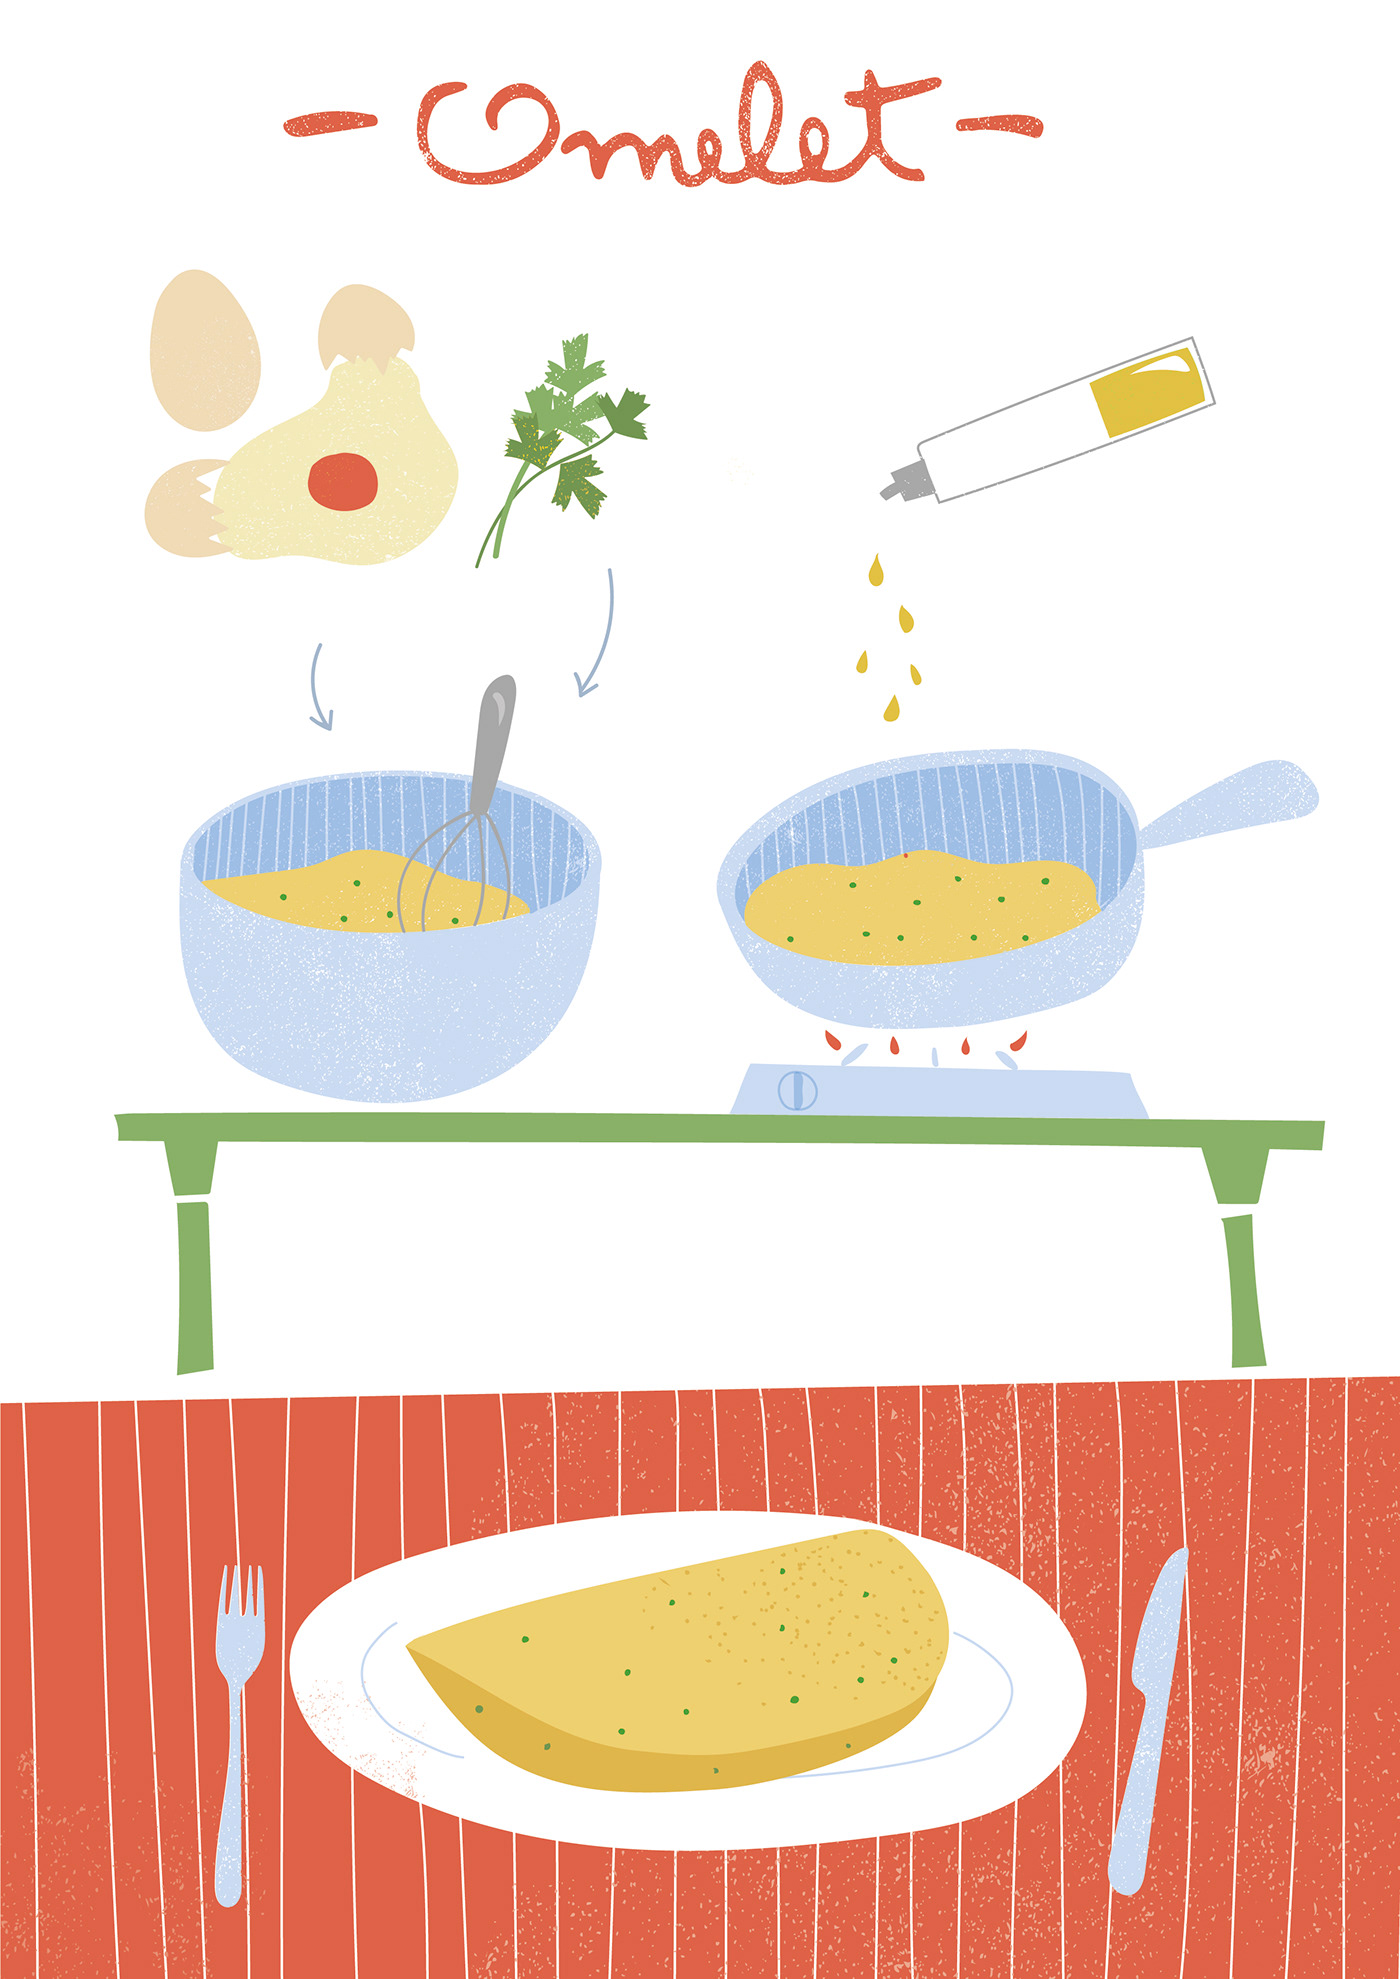 ILLUSTRATION  Food  omelet kids